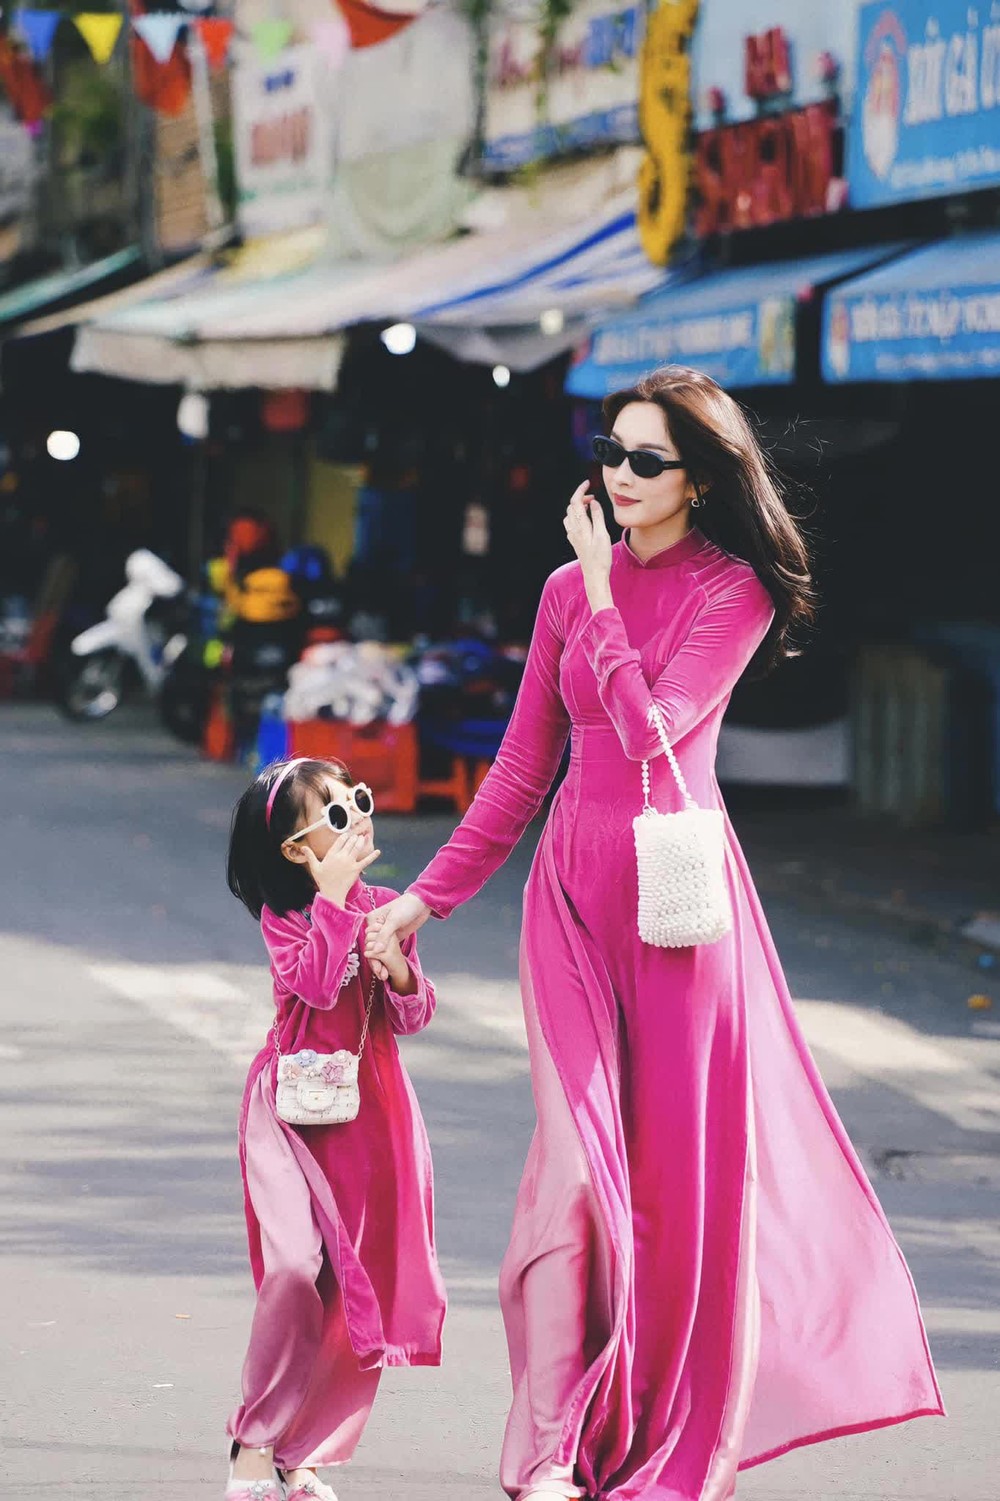  Hoa hậu Đặng Thu Thảo đưa nhóc tỳ hào môn đi du lịch, ái nữ gây ấn tượng vì 1 chi tiết nổi trội - Ảnh 4.